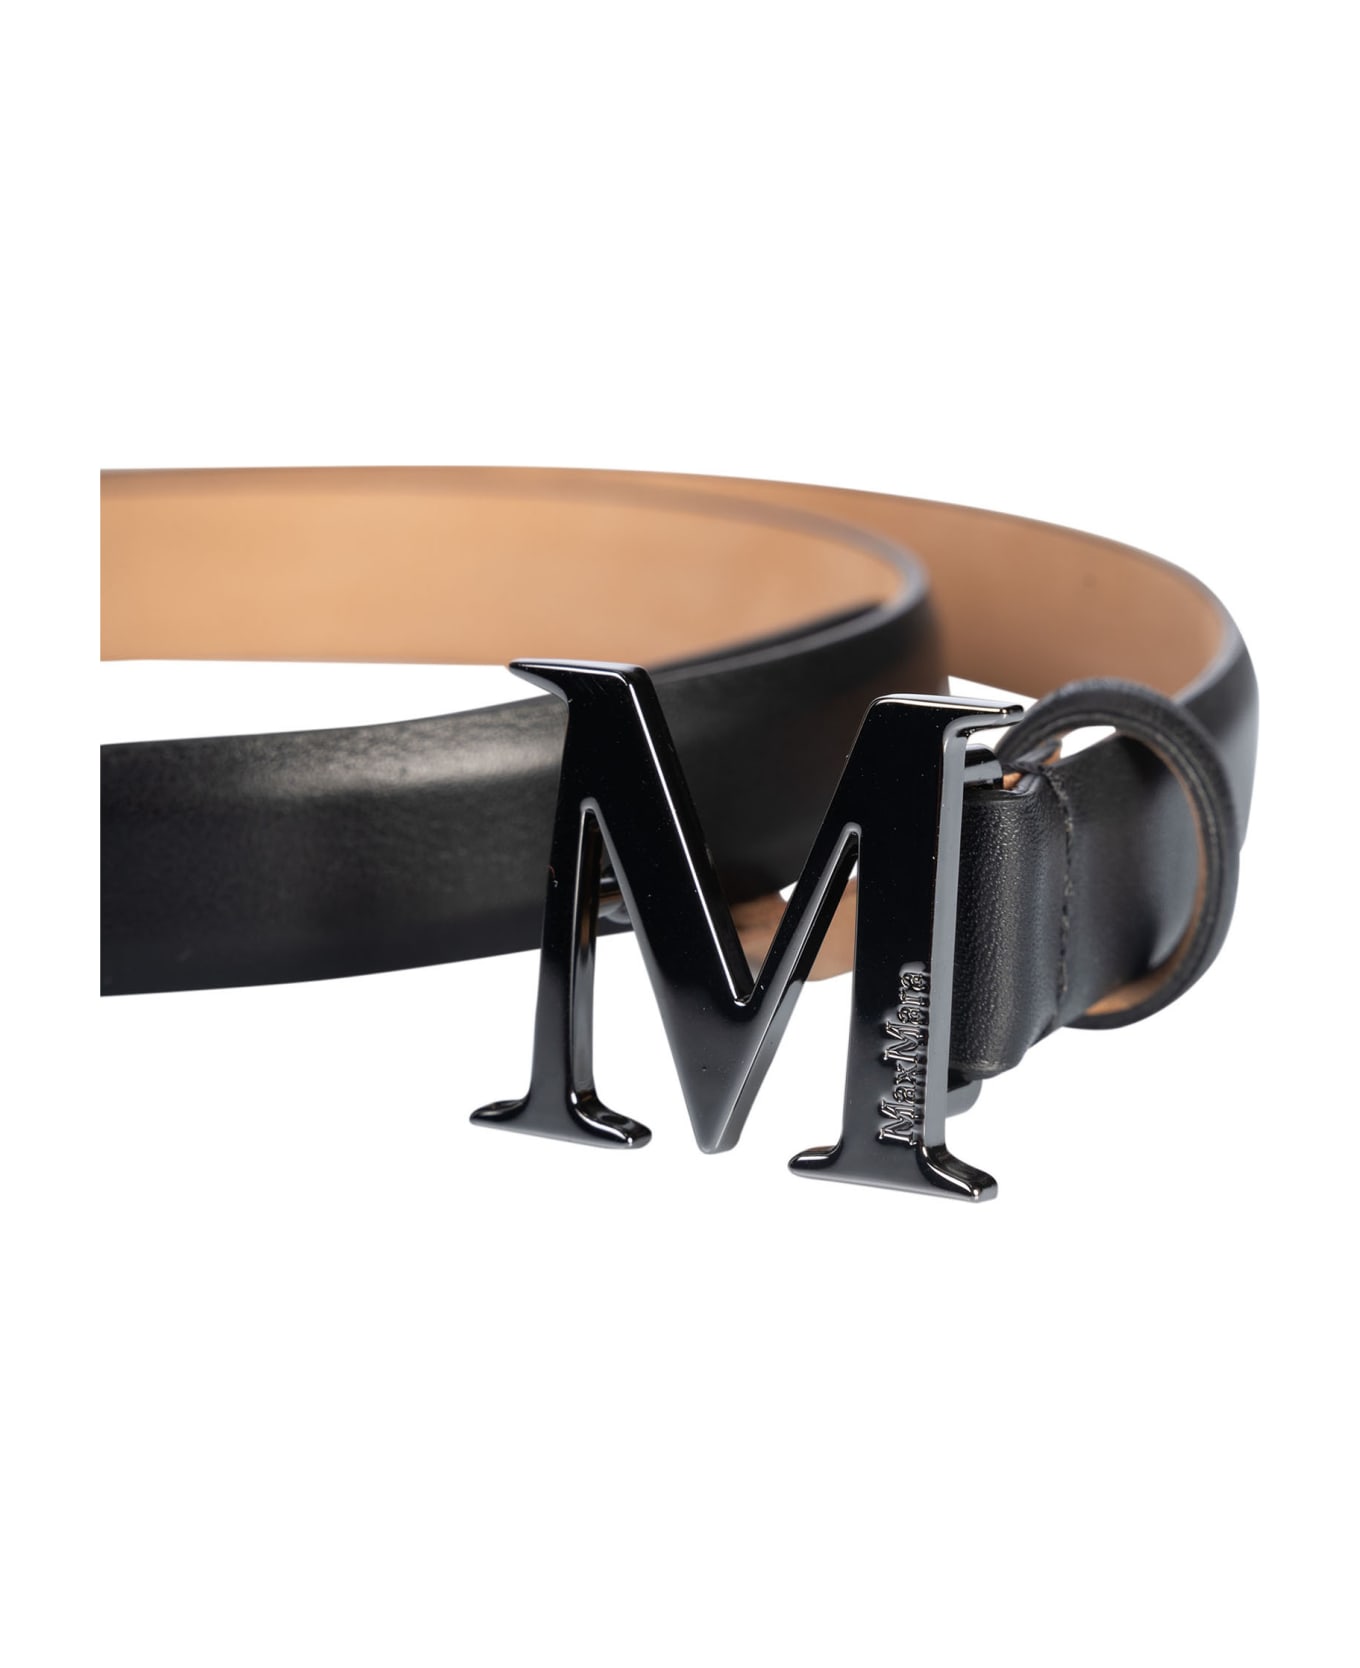 Max Mara Mclassic20 Belt - C ベルト